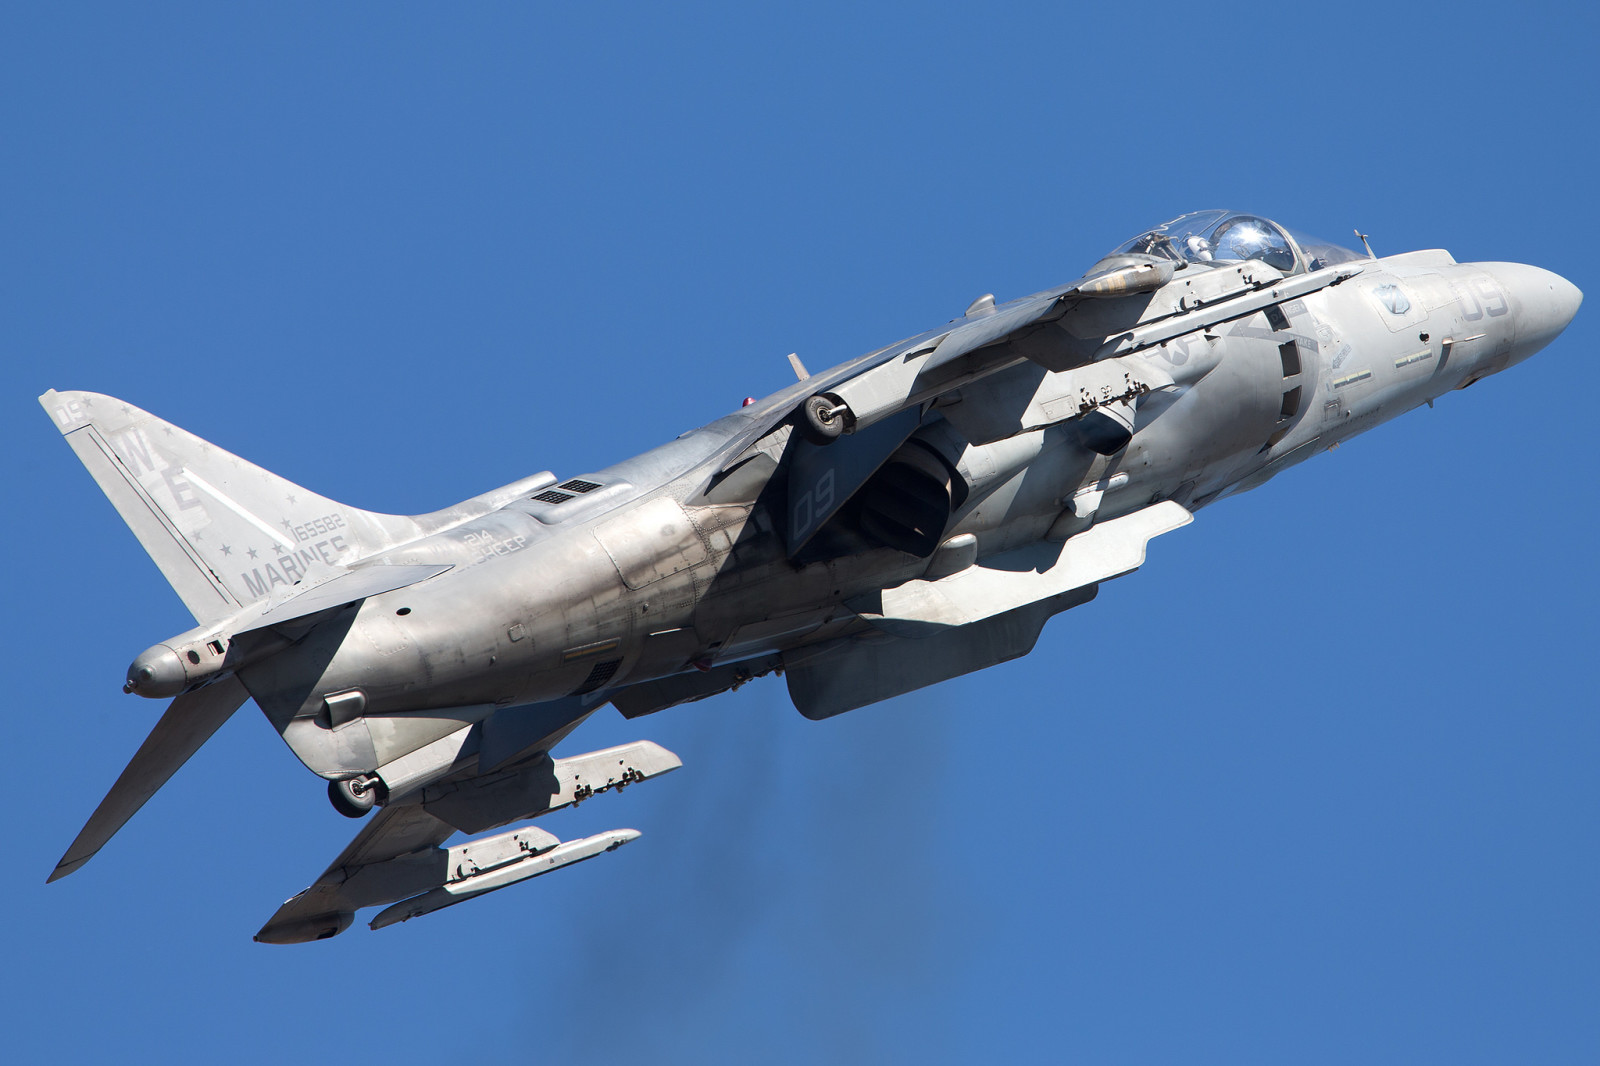 โจมตี, Harrier II, AV-8B, "Harrier" II